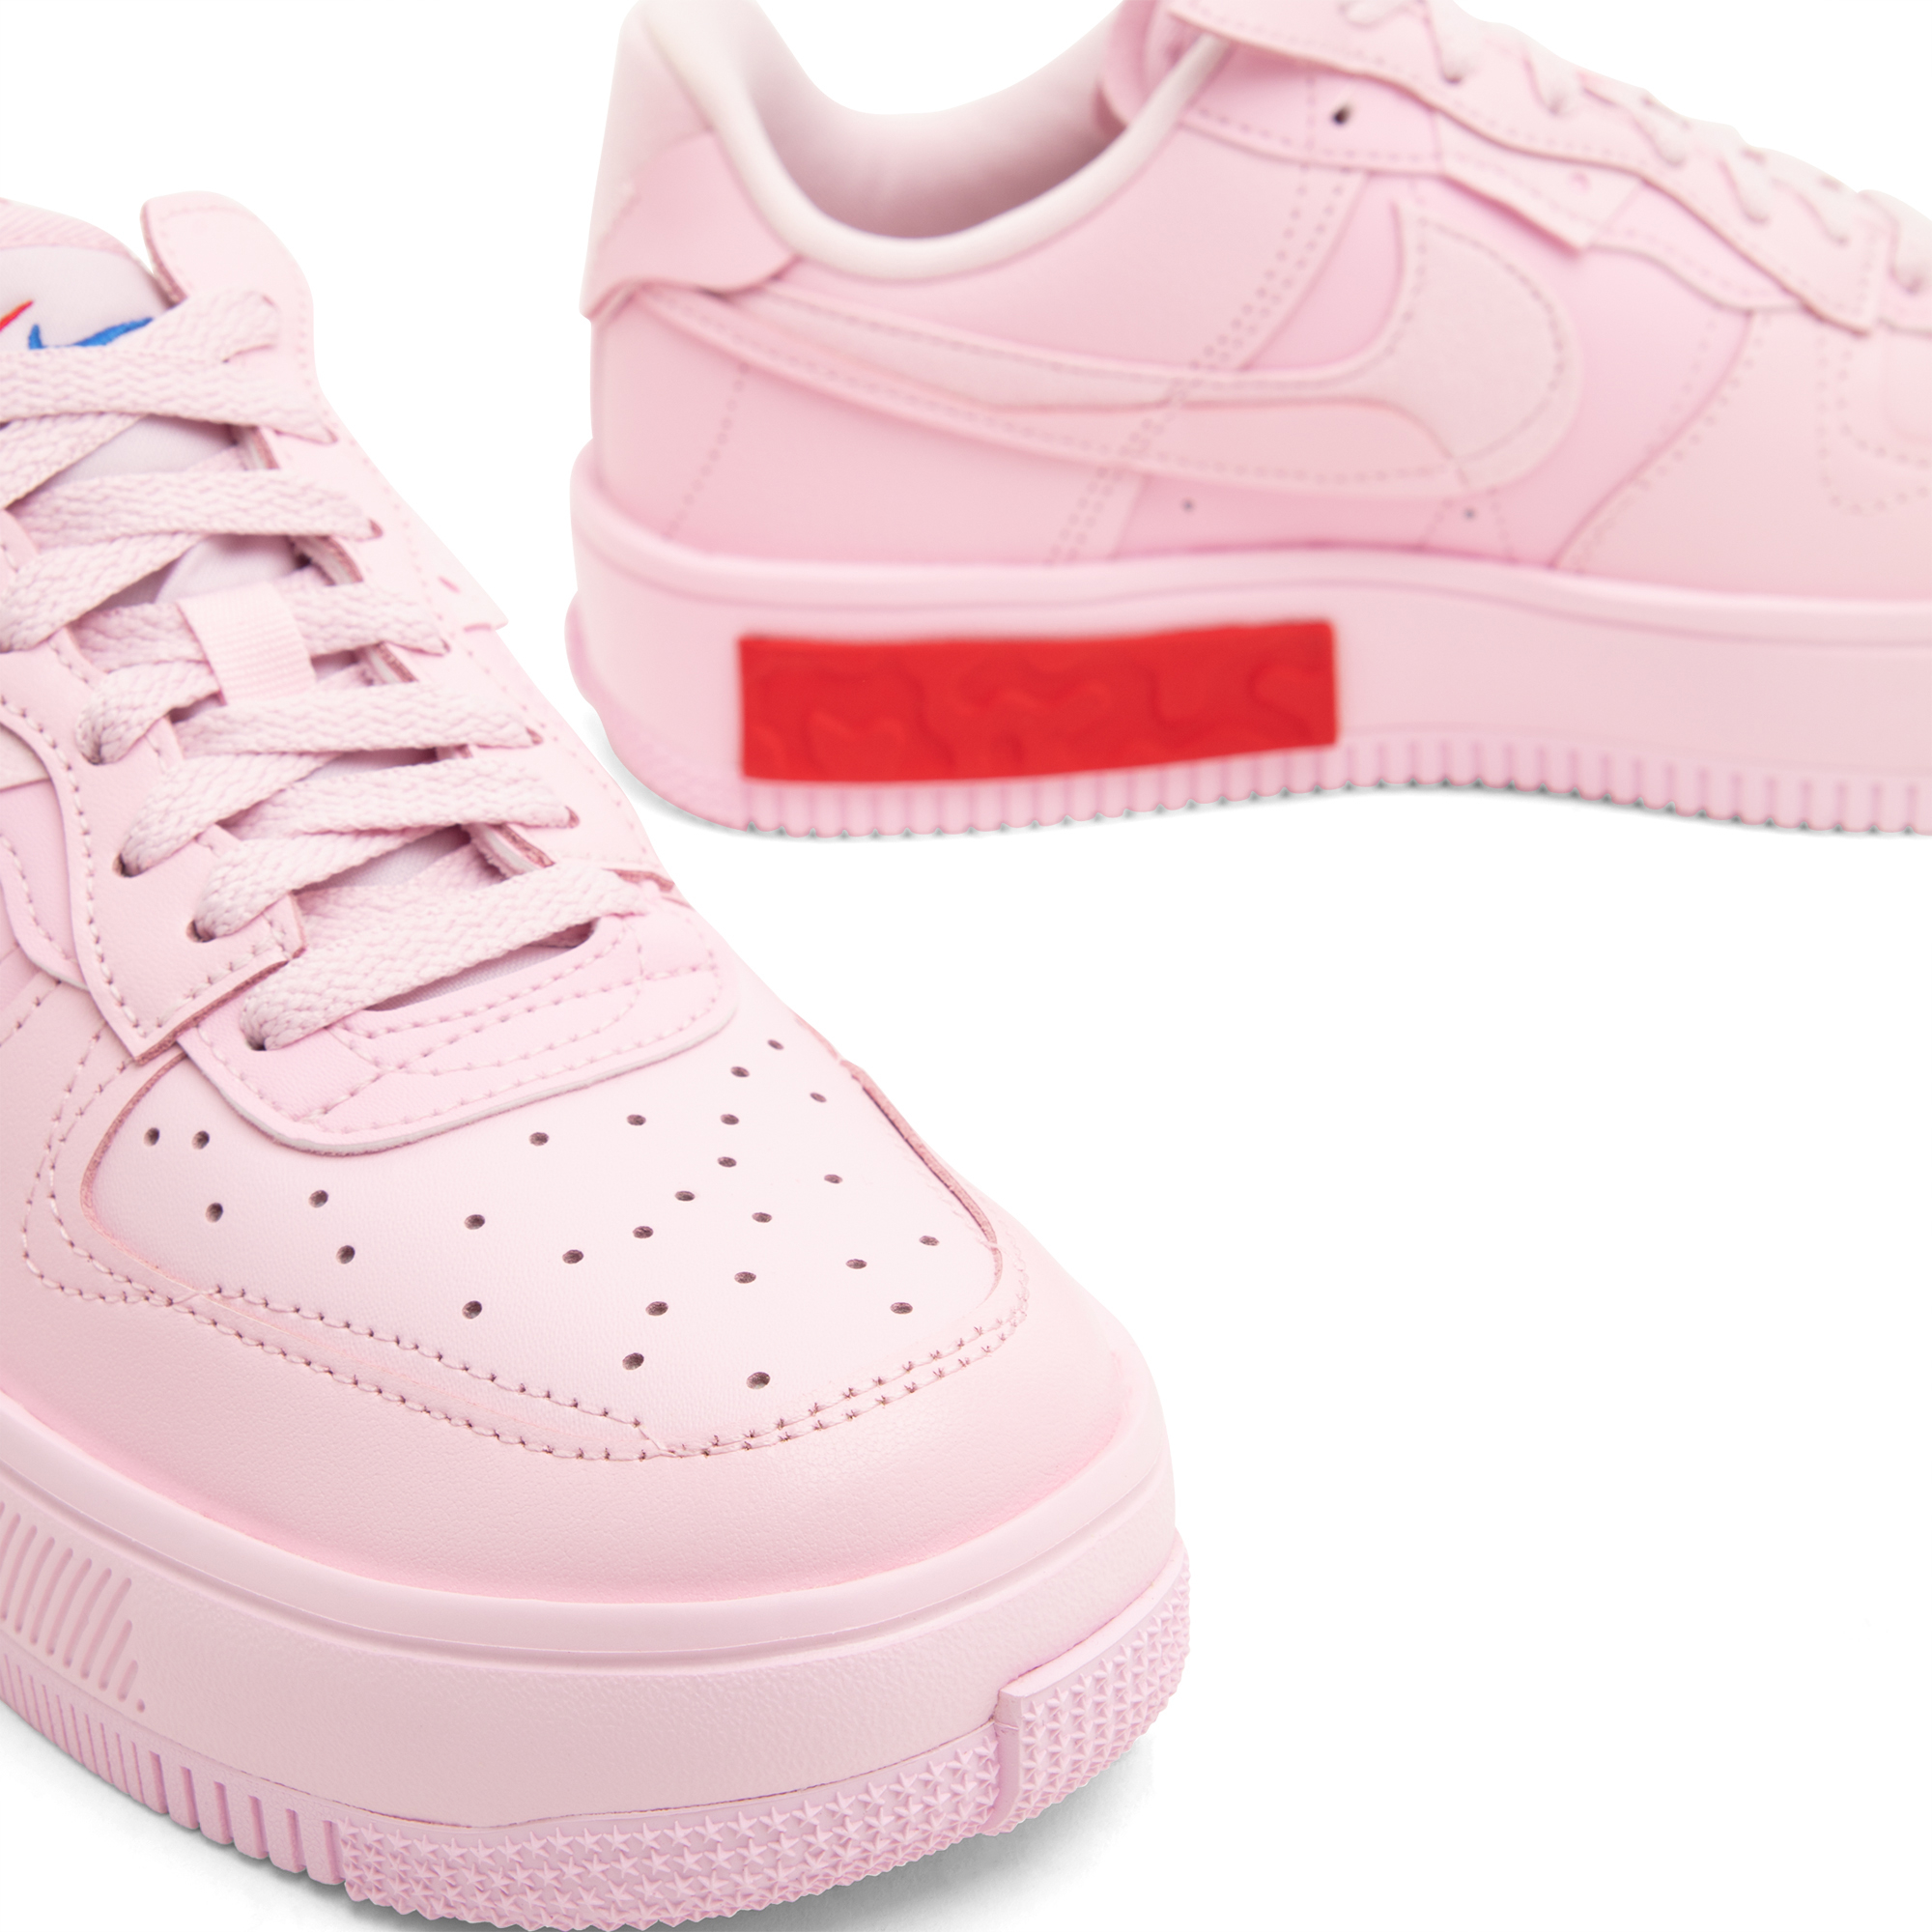 Nike Air Force 1 Fontanka Foam Pink sneakers for Women - Pink in 